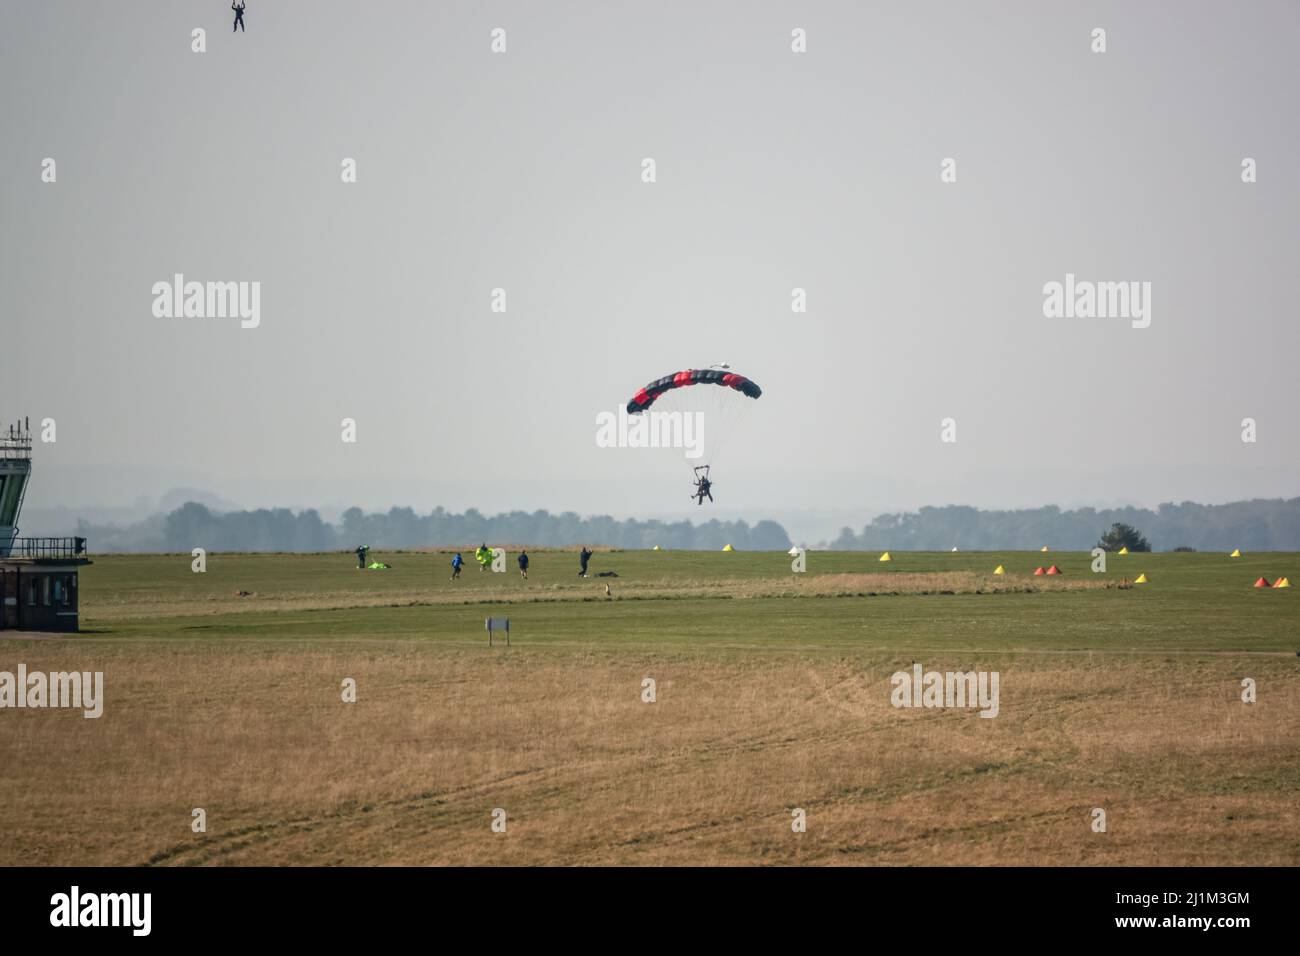 Saut en parachute arrivant sur un terrain d'aviation en herbe, ciel bleu Banque D'Images